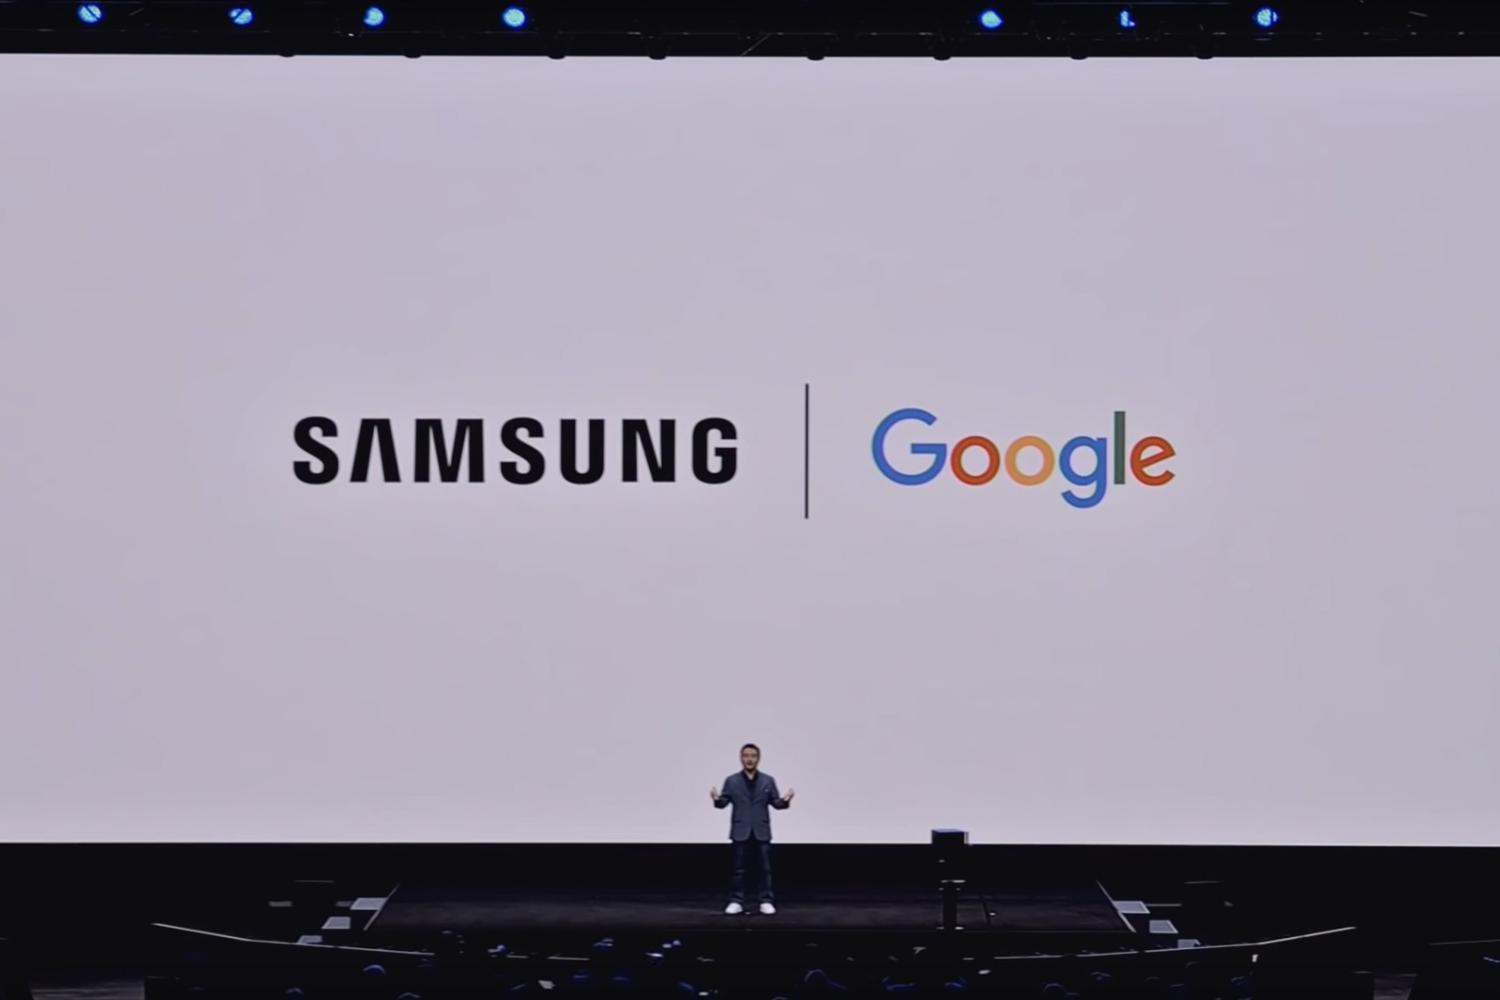 سامسونگ و گوگل روی قابلیت‌های بیشتر بر پایه هوش مصنوعی - آژانس مدیا و مارکتینگ ردی استودیو